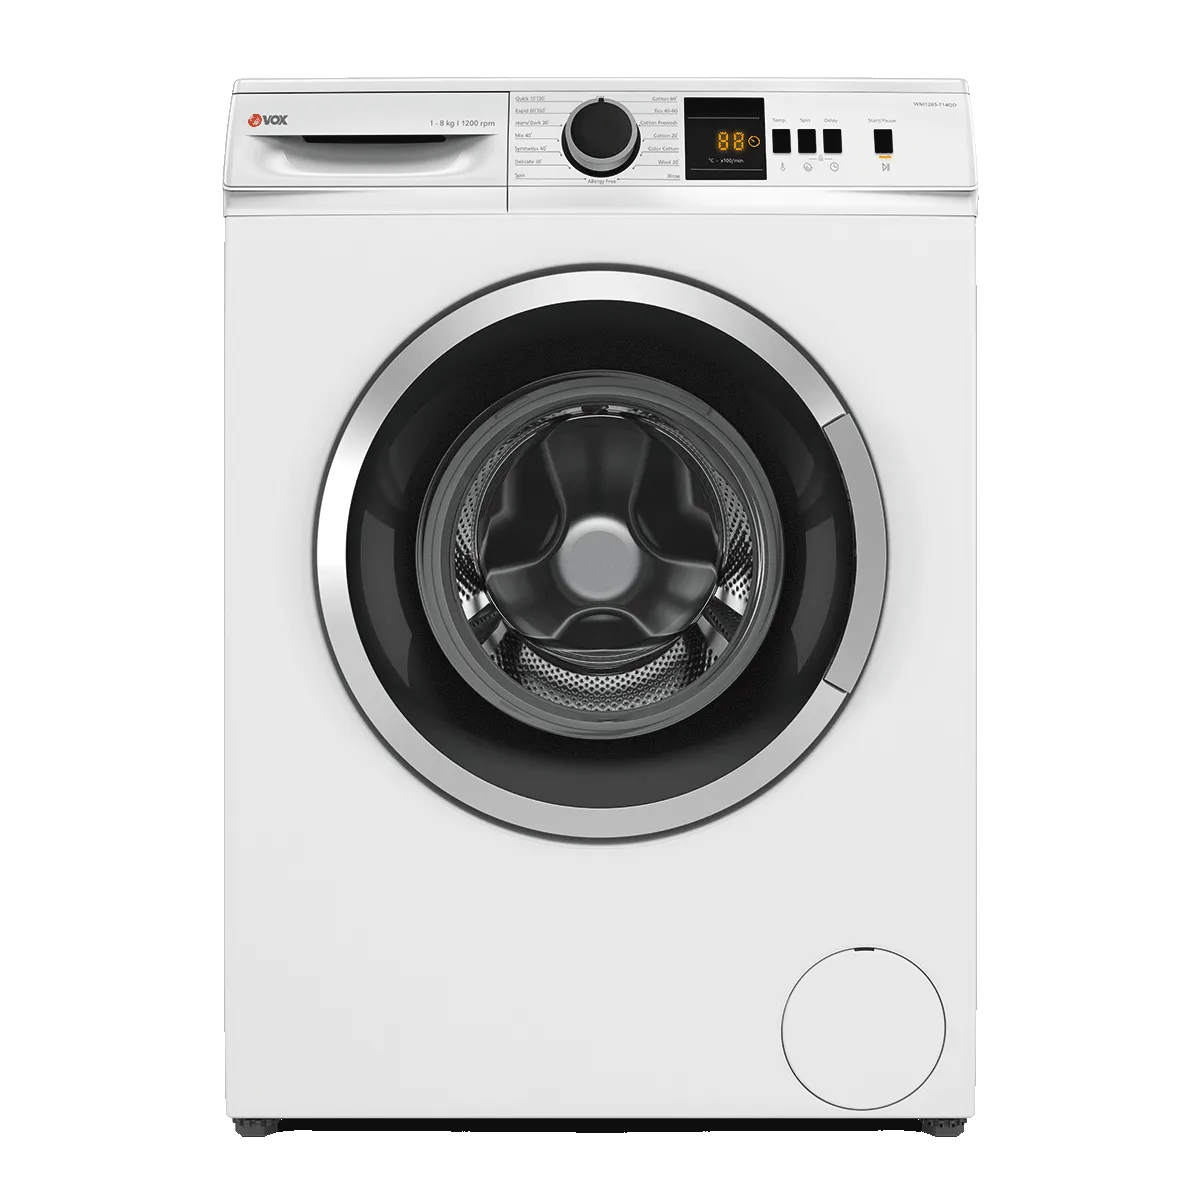 Washing machine WM1285-T14QD 